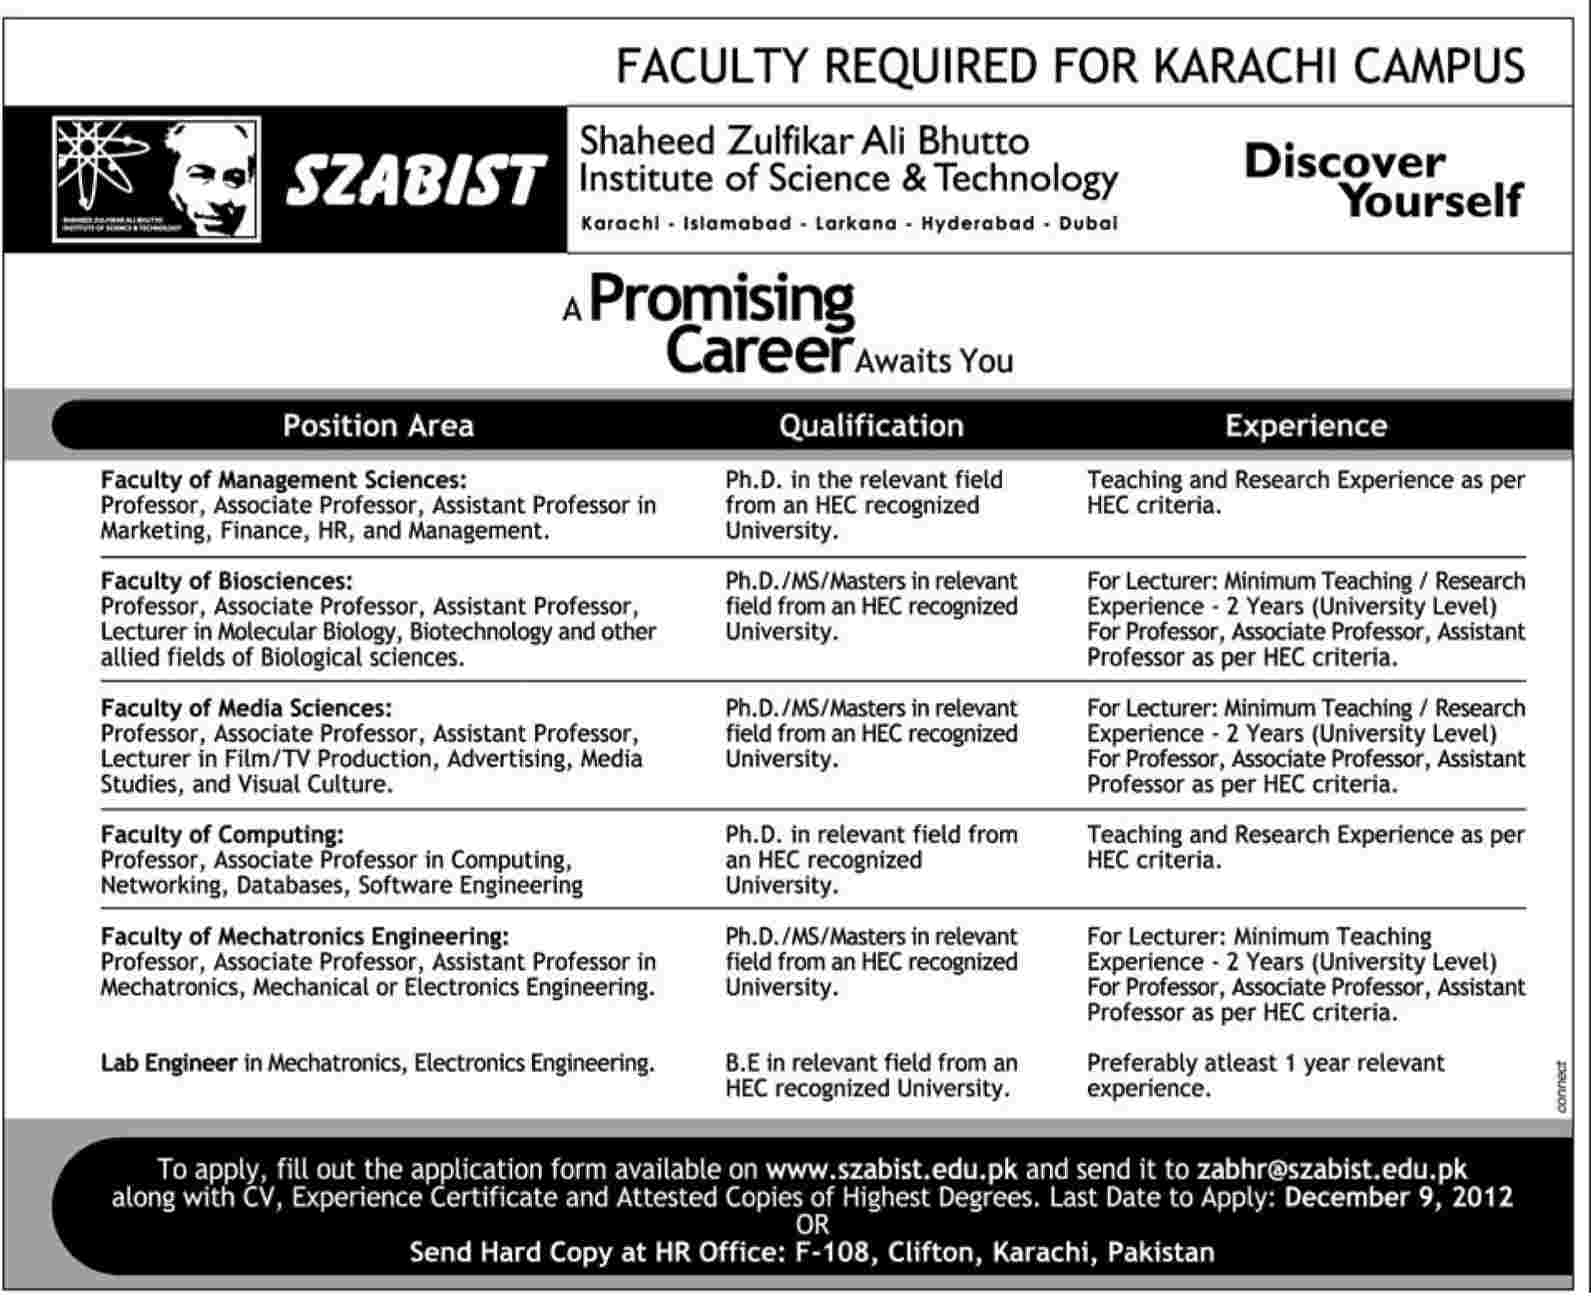 SZABIST Karachi Campus Jobs 2012 for Faculty